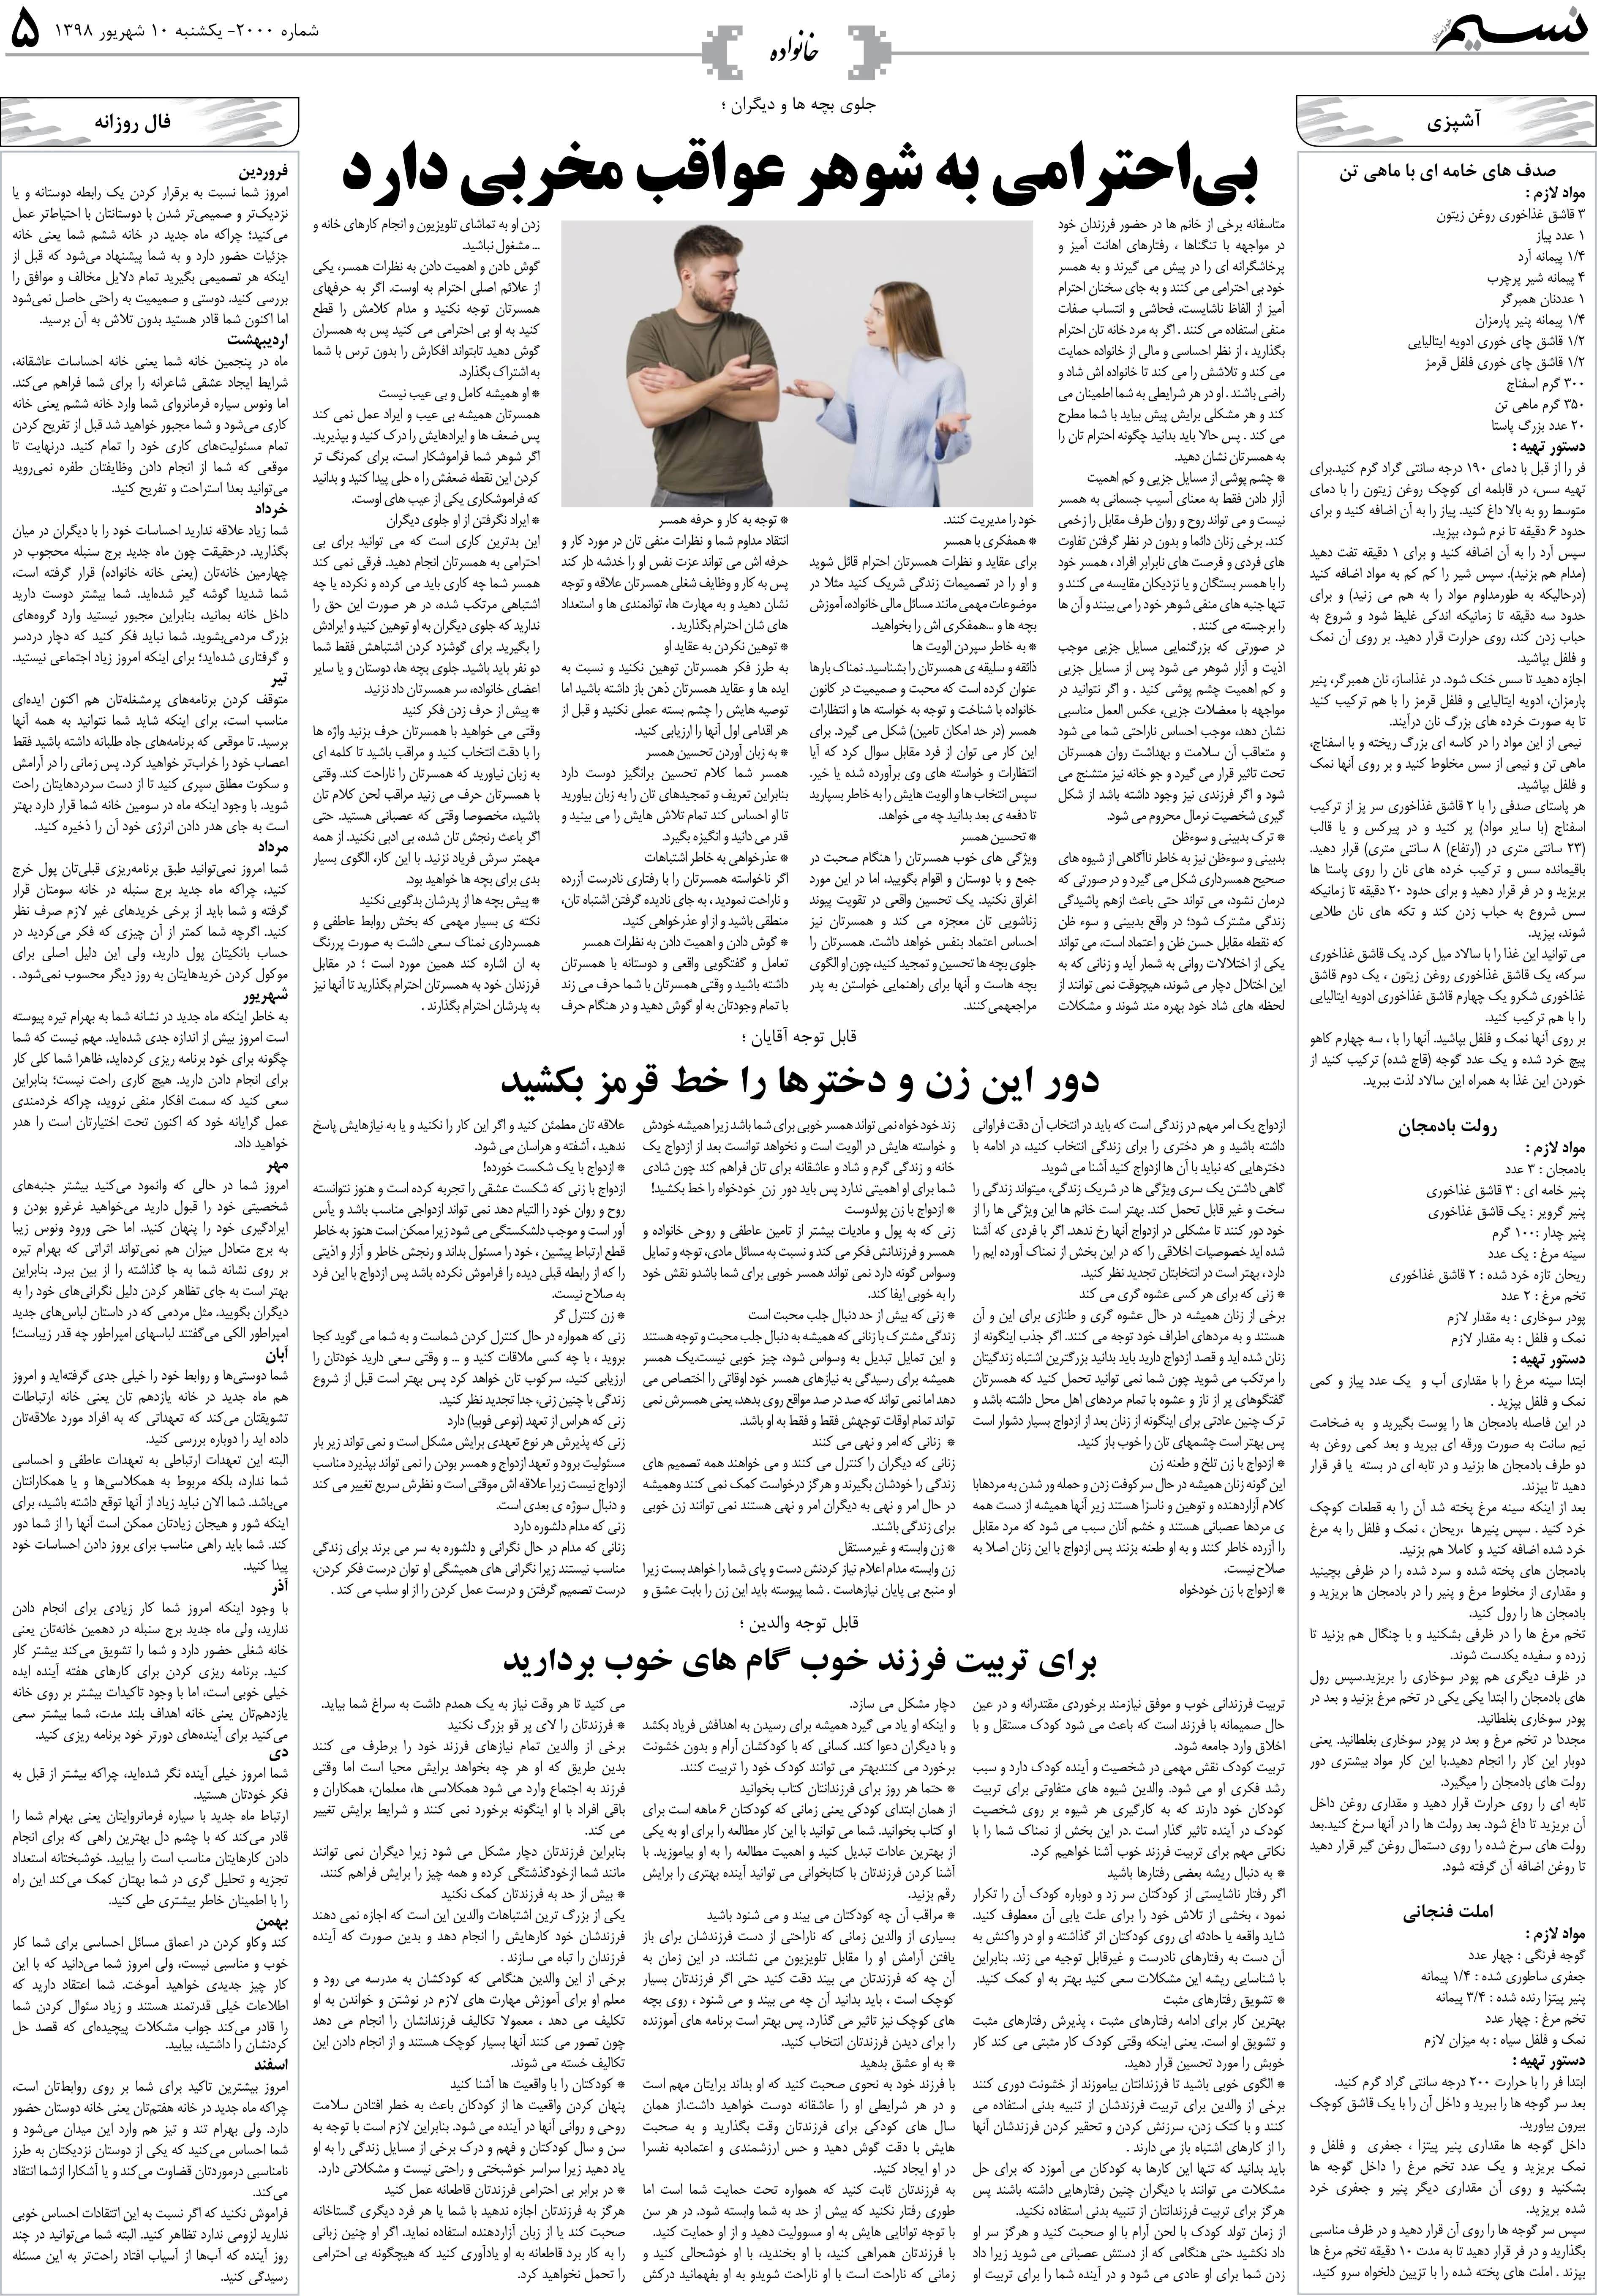 صفحه خانواده روزنامه نسیم شماره 2000